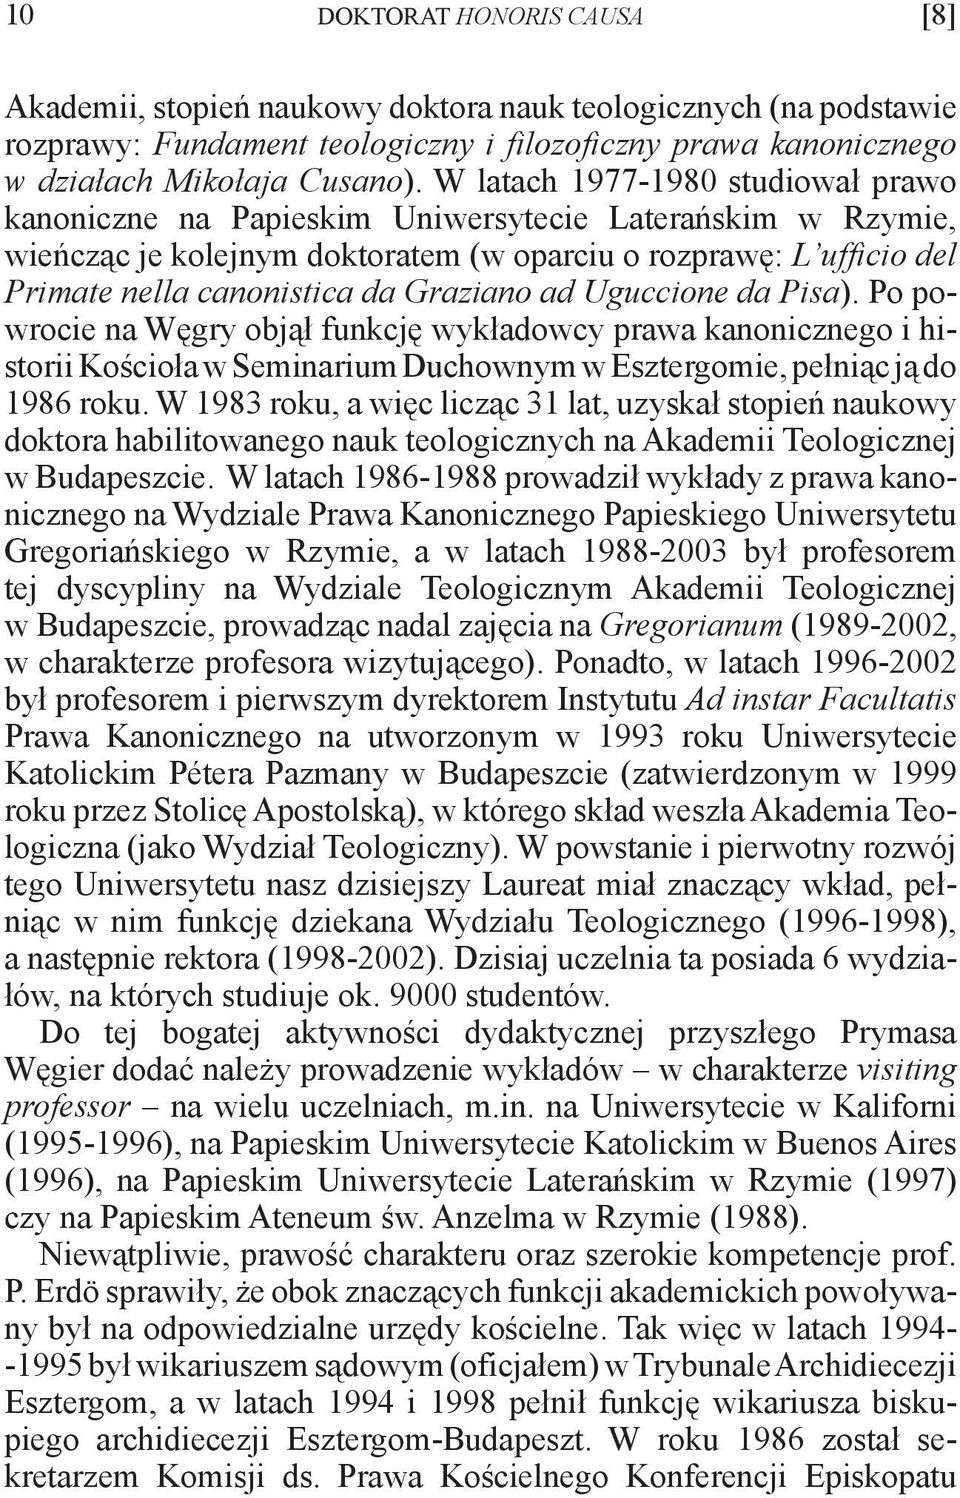 Graziano ad Uguccione da Pisa). Po powrocie na Węgry objął funkcję wykładowcy prawa kanonicznego i historii Kościoła w Seminarium Duchownym w Esztergomie, pełniąc ją do 1986 roku.